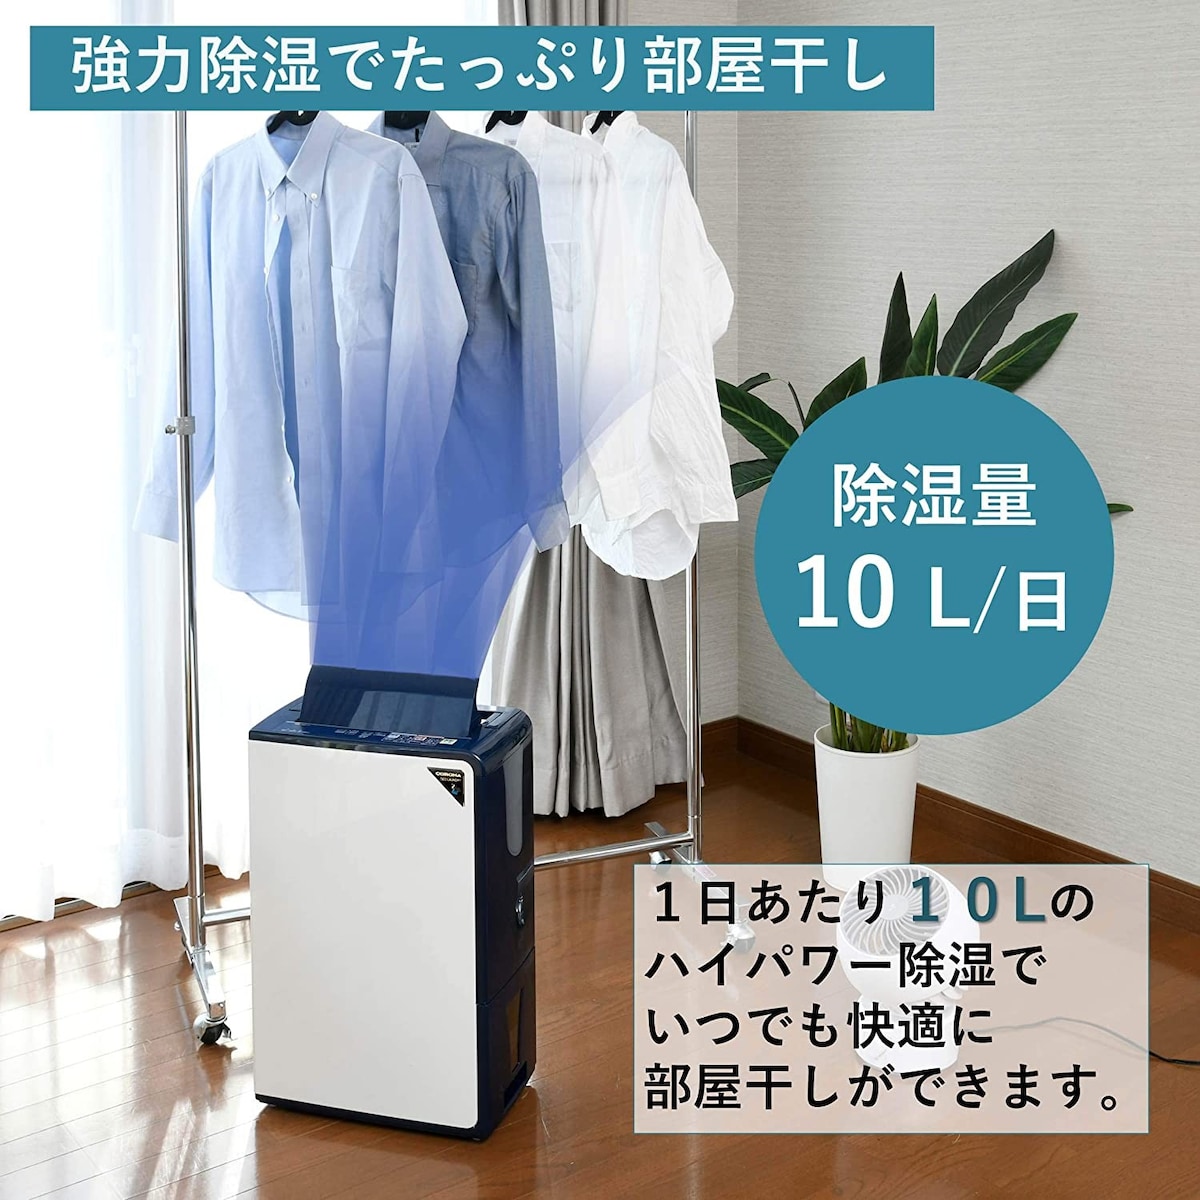 CORONA CD-H1819 衣類乾燥除湿器 2019年製 - 冷暖房/空調